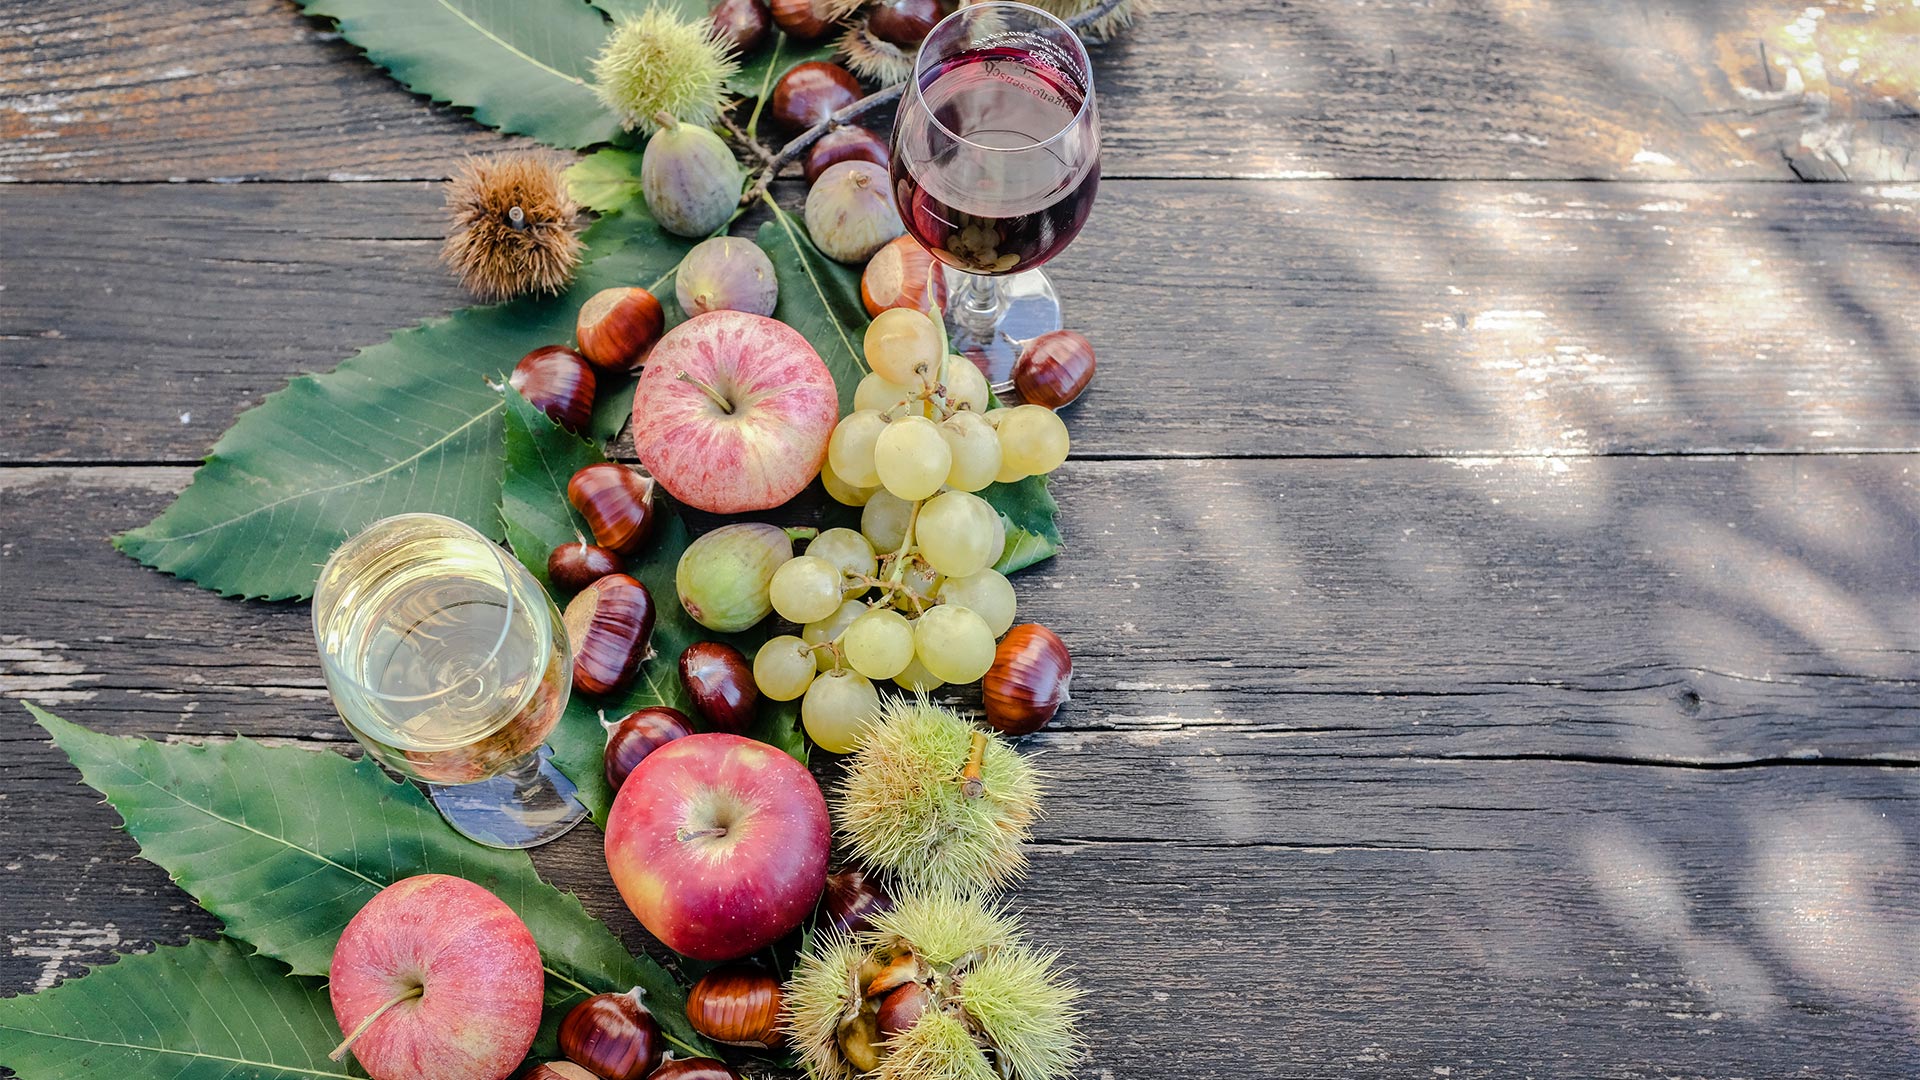 Pietanza della stagione a base di mele rosse, uva e castagne accompagnate da un calice di vino bianco.